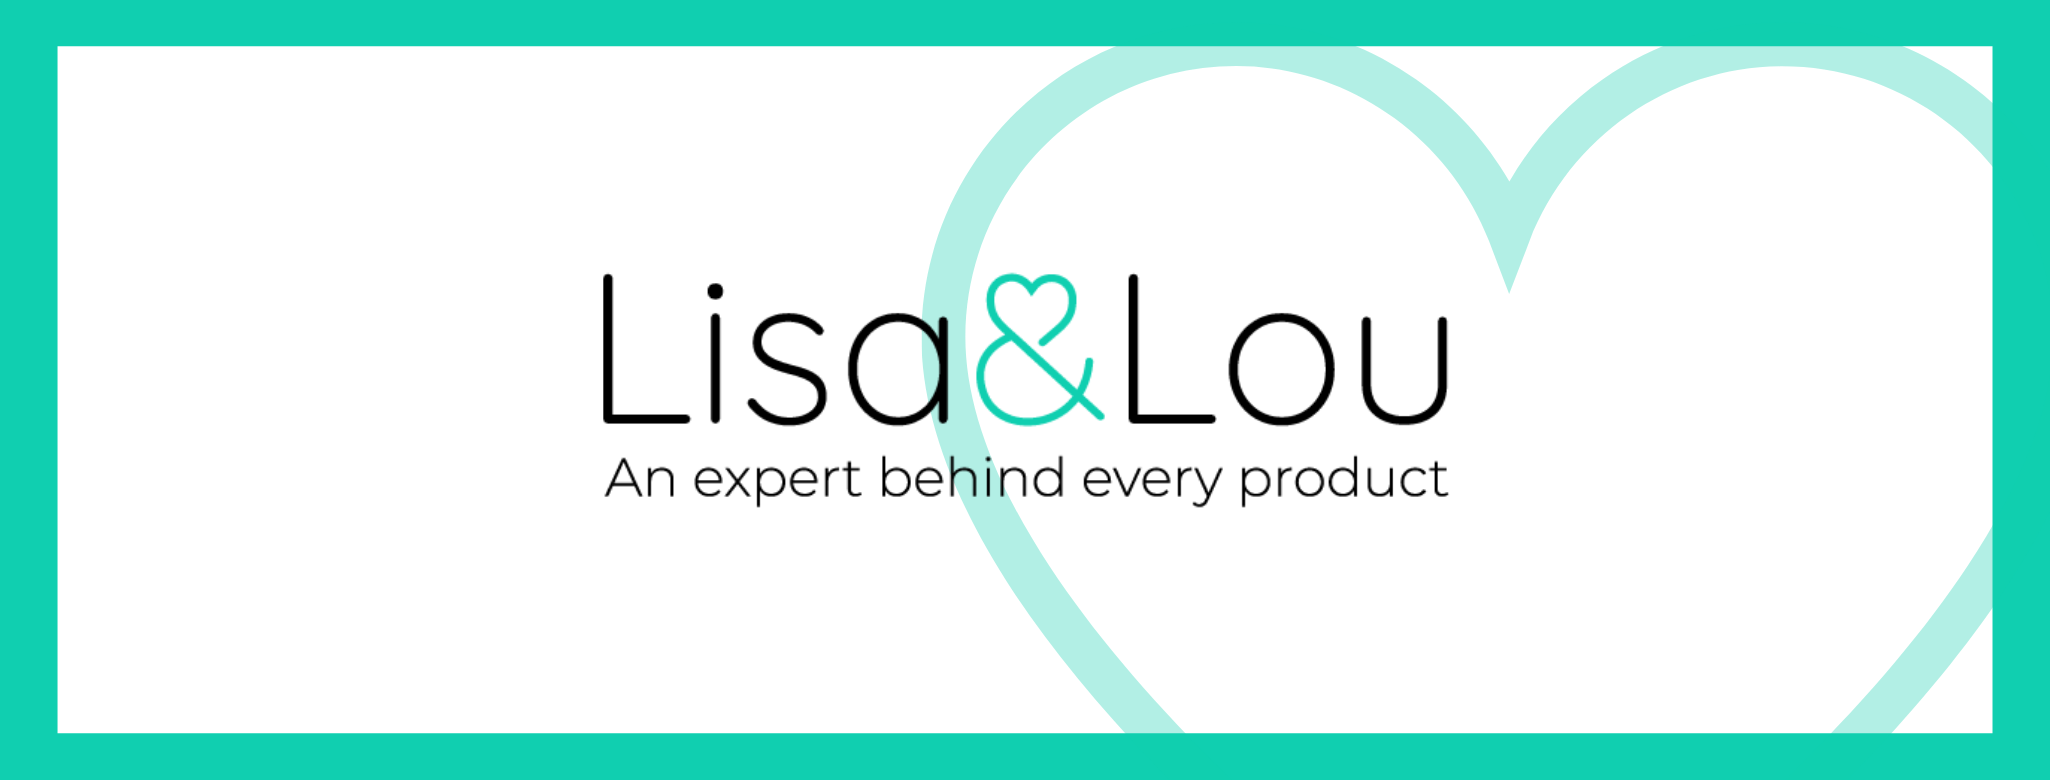 Introducing Lisa & Lou!